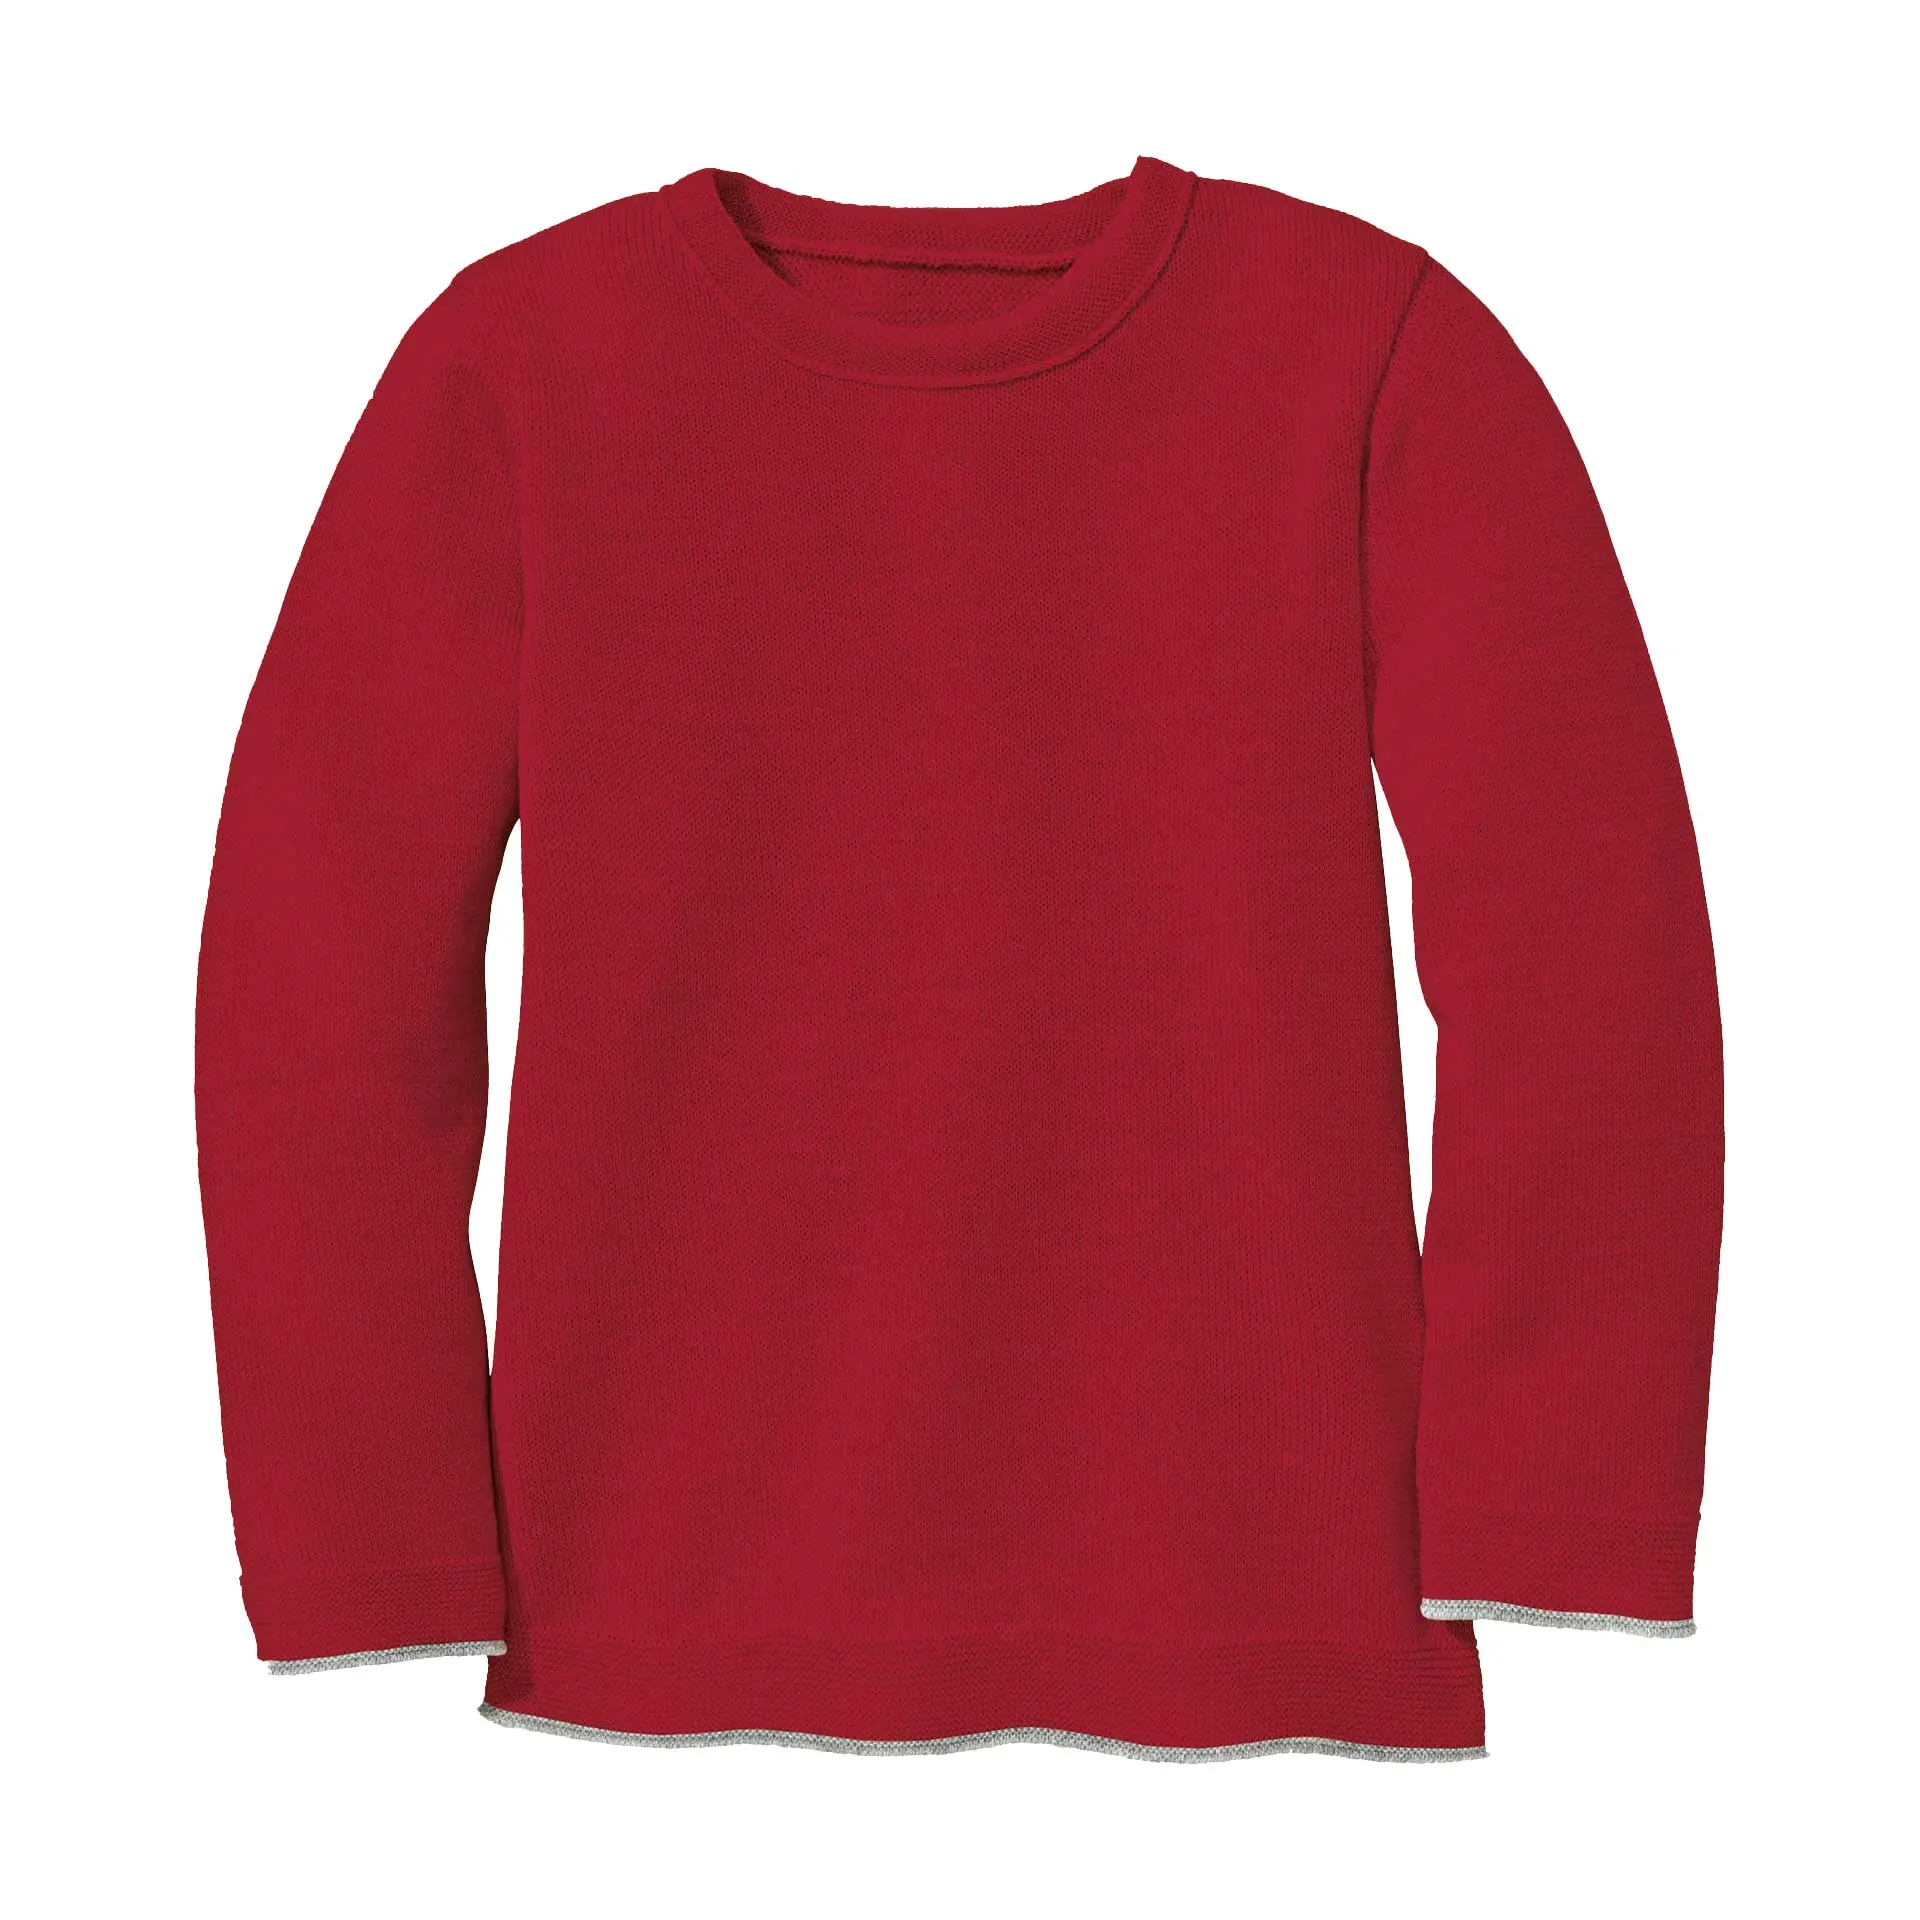 Strick-Pullover * Auslaufartikel